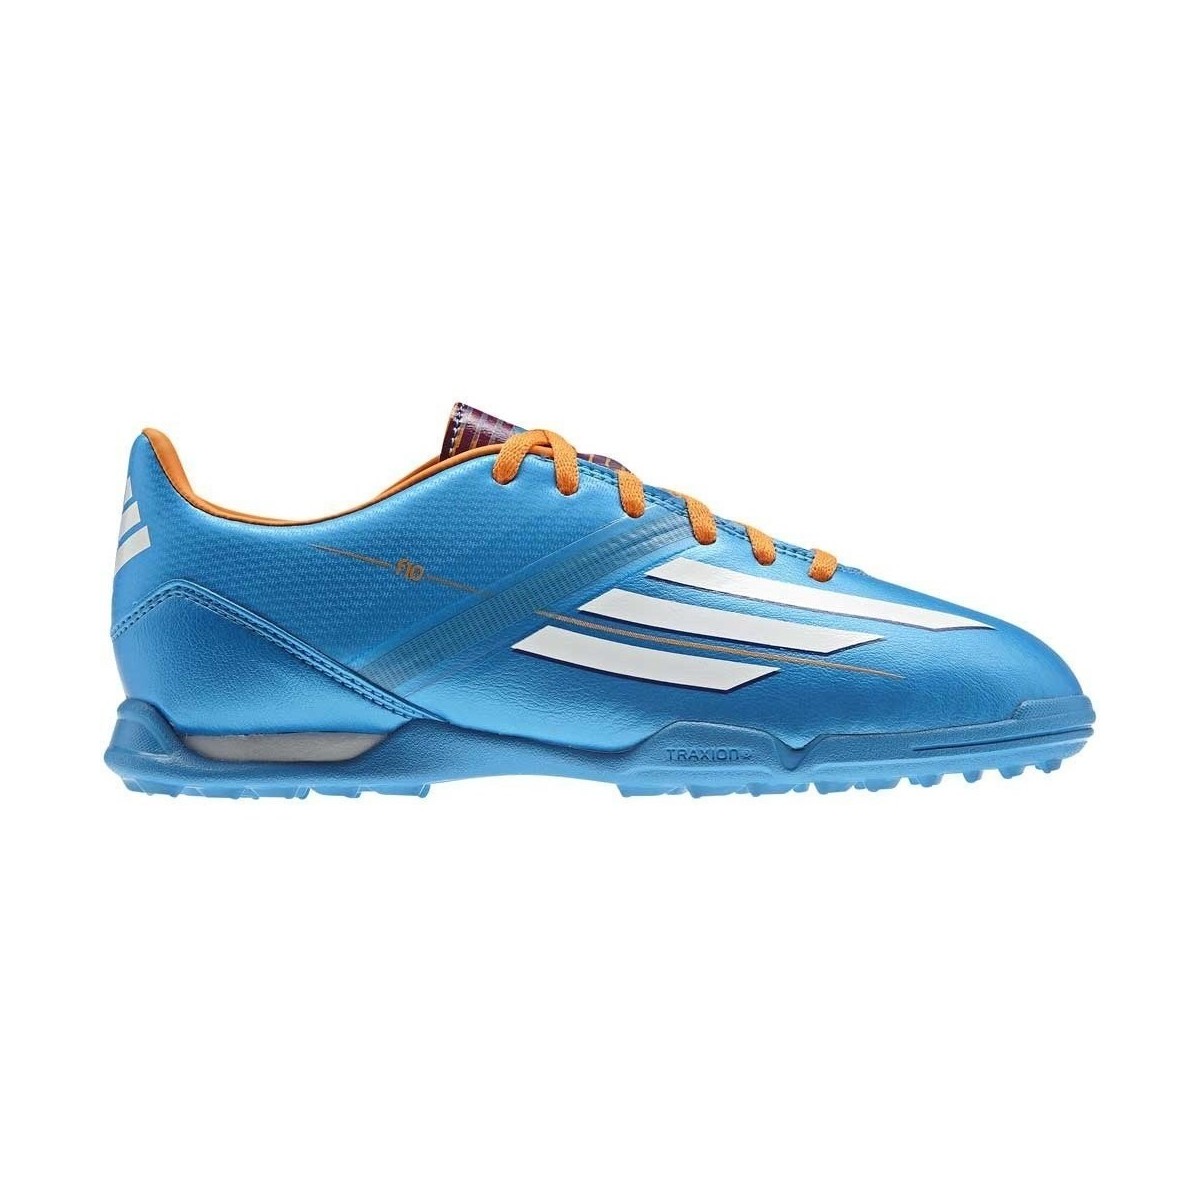 Chaussures Enfant Football adidas Originals F10 Trx TF JR Orange, Bleu